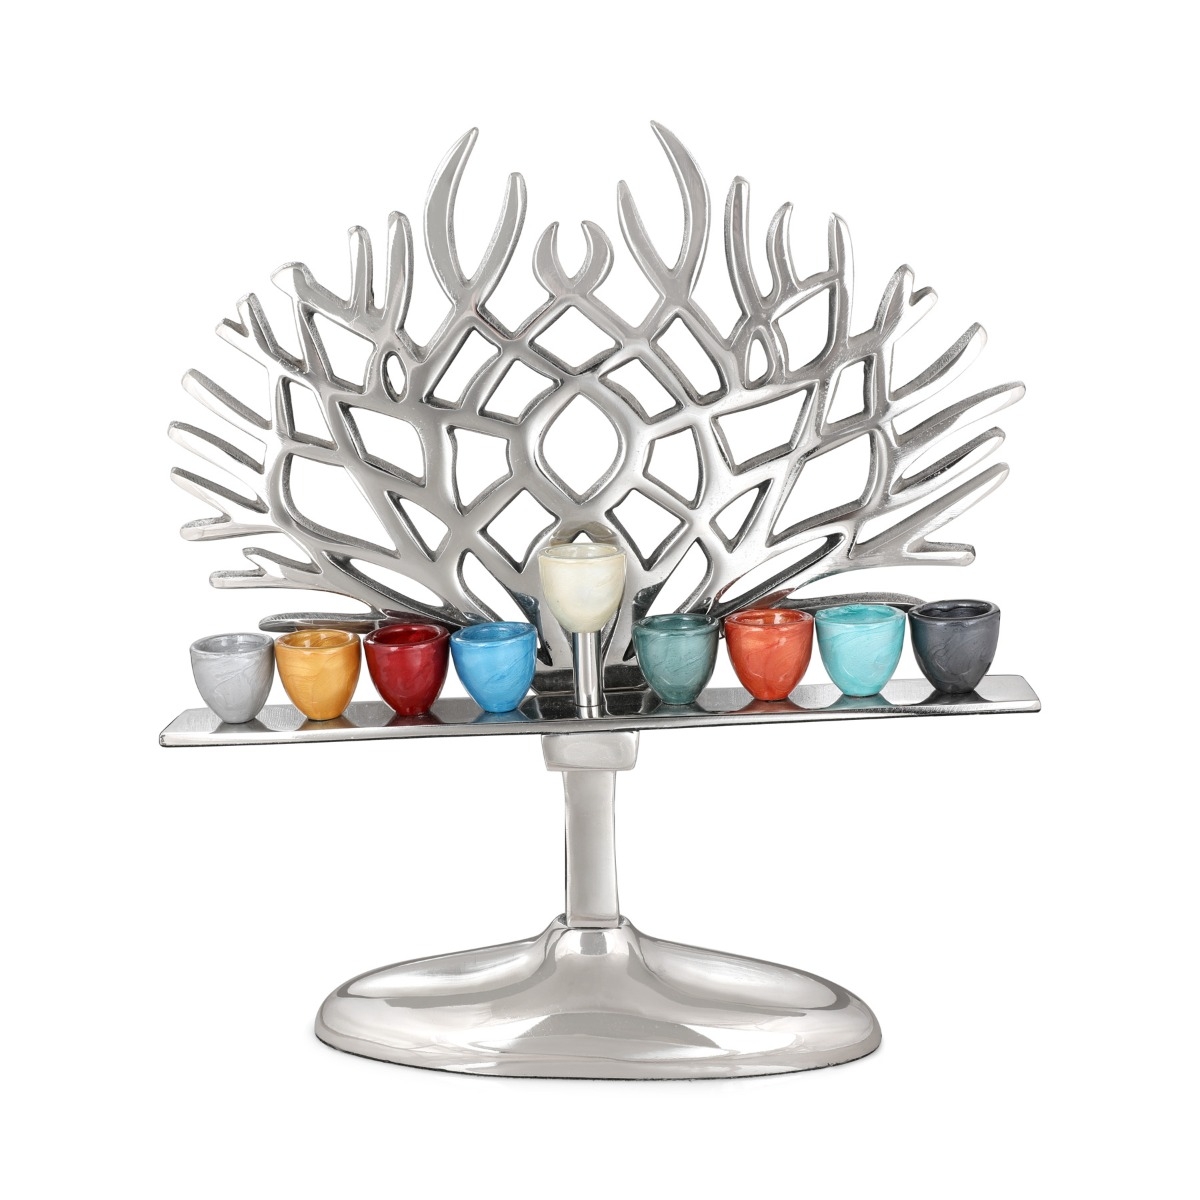 Aluminum Tree of Life Hanukkah Menorah with Colorful Candleholders - 1